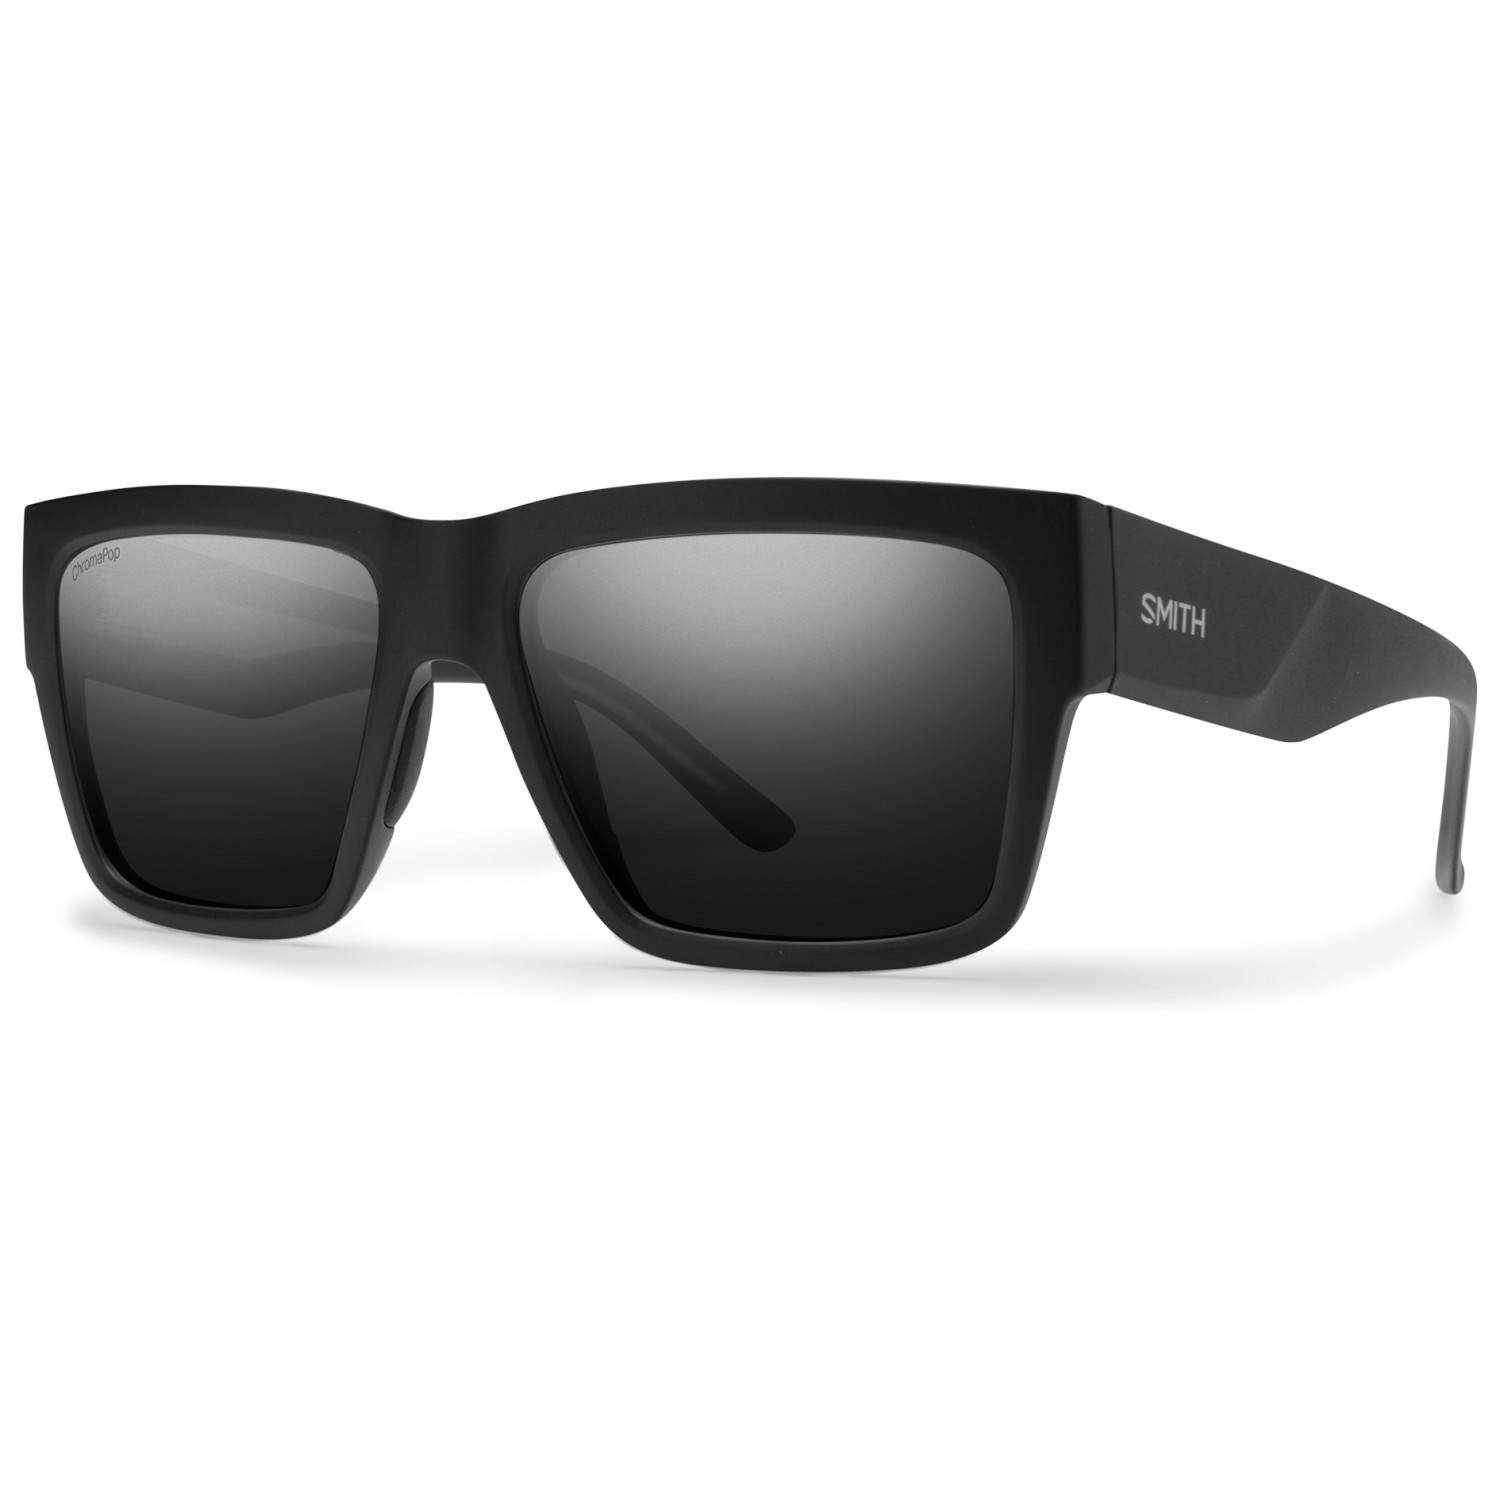 Солнцезащитные очки Smith Lineup ChromaPop Polarized Cat 3 VLT 10%, матовый черный